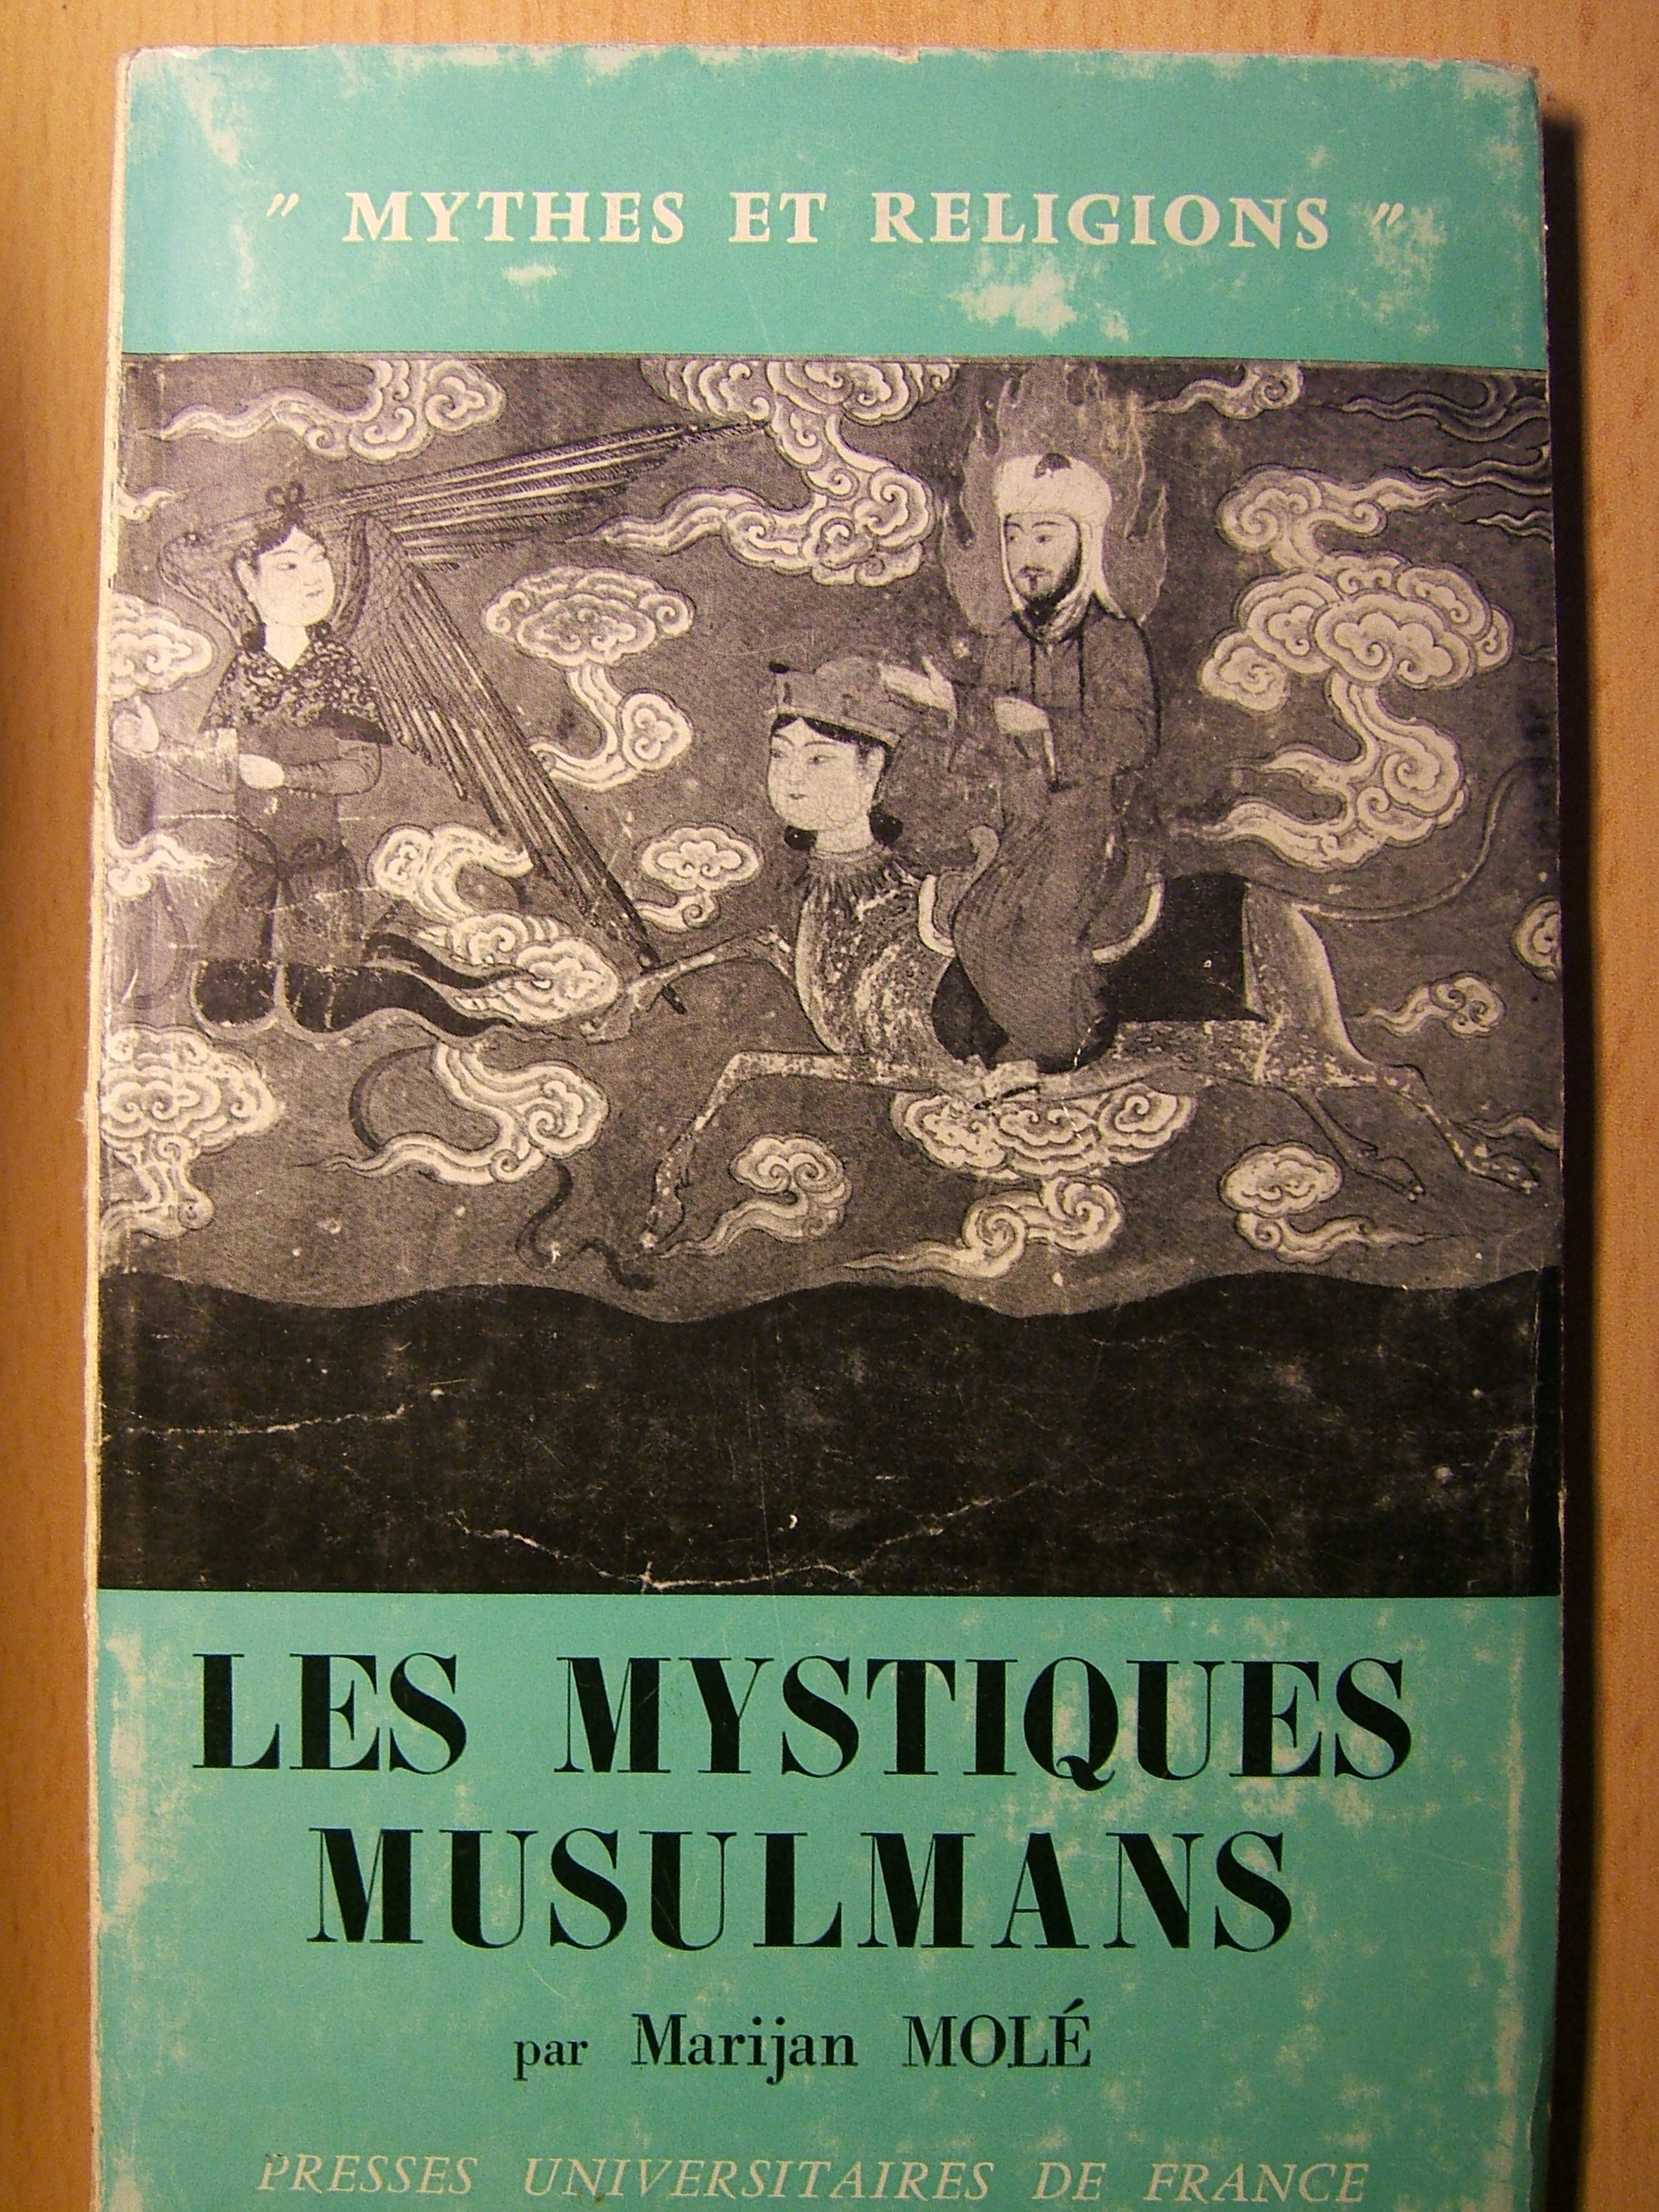 Mystiques musulmans (Molé)